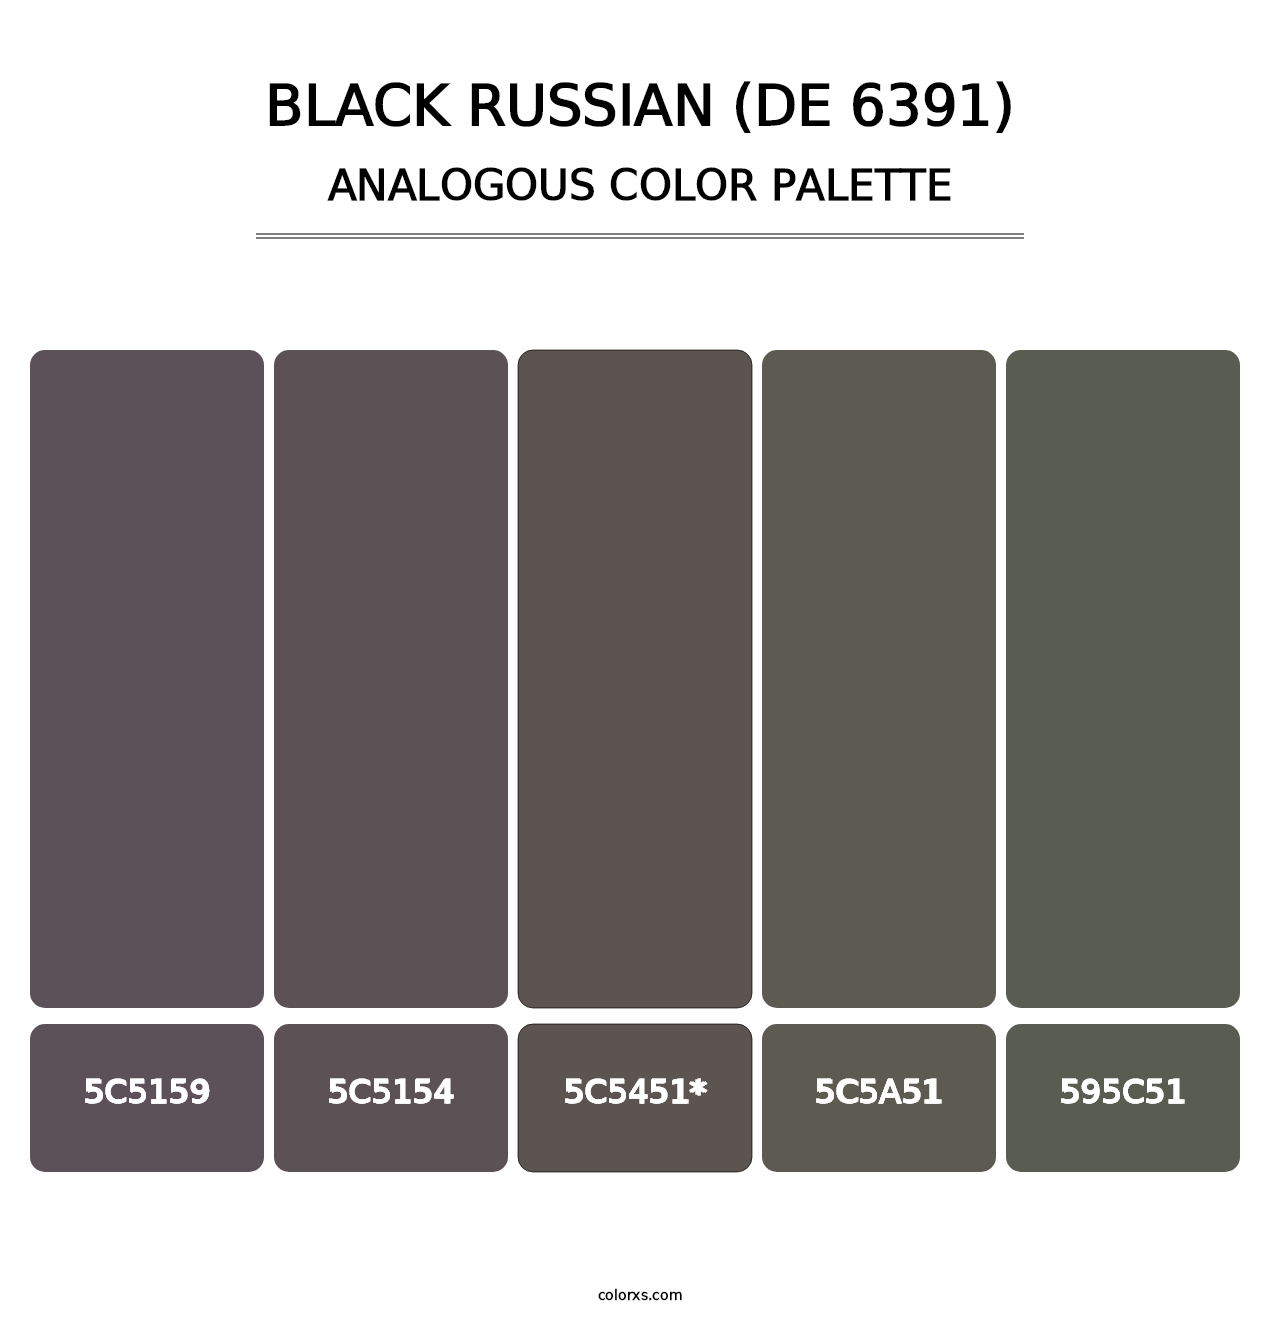 Black Russian (DE 6391) - Analogous Color Palette